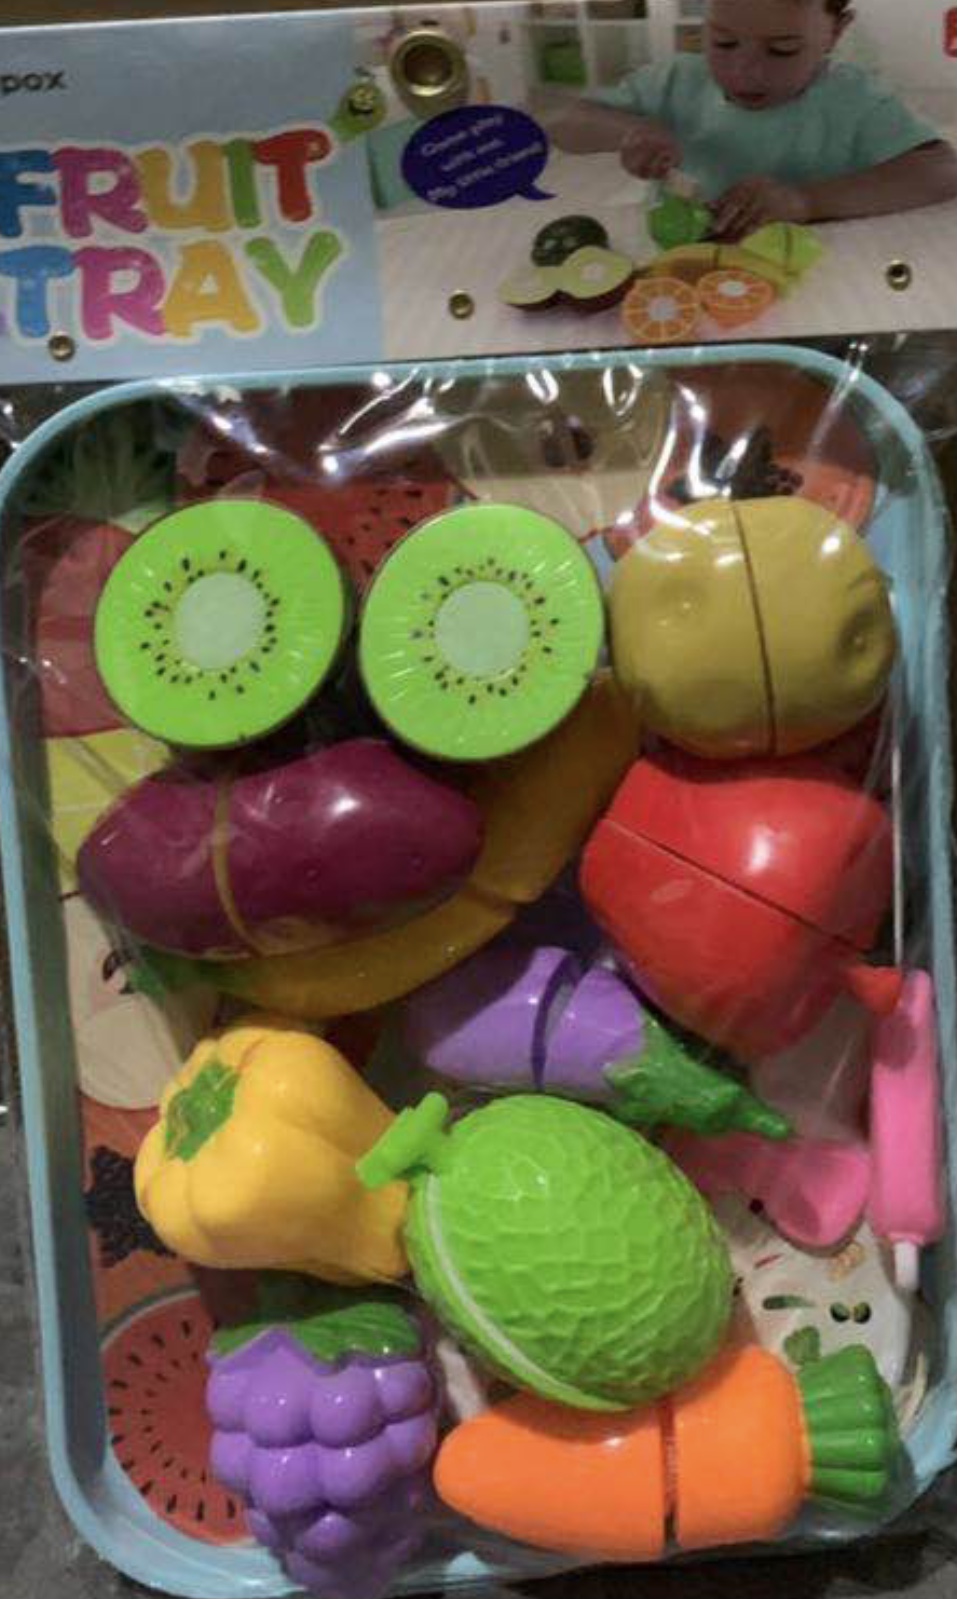 Se de legume de feliat o activitate practică de joc de rol în bucătărie de tip Montessori pentru cei mici setul conține o mulțime de legume cu de singe realist culori fi precum un joc de rol în bucătărie